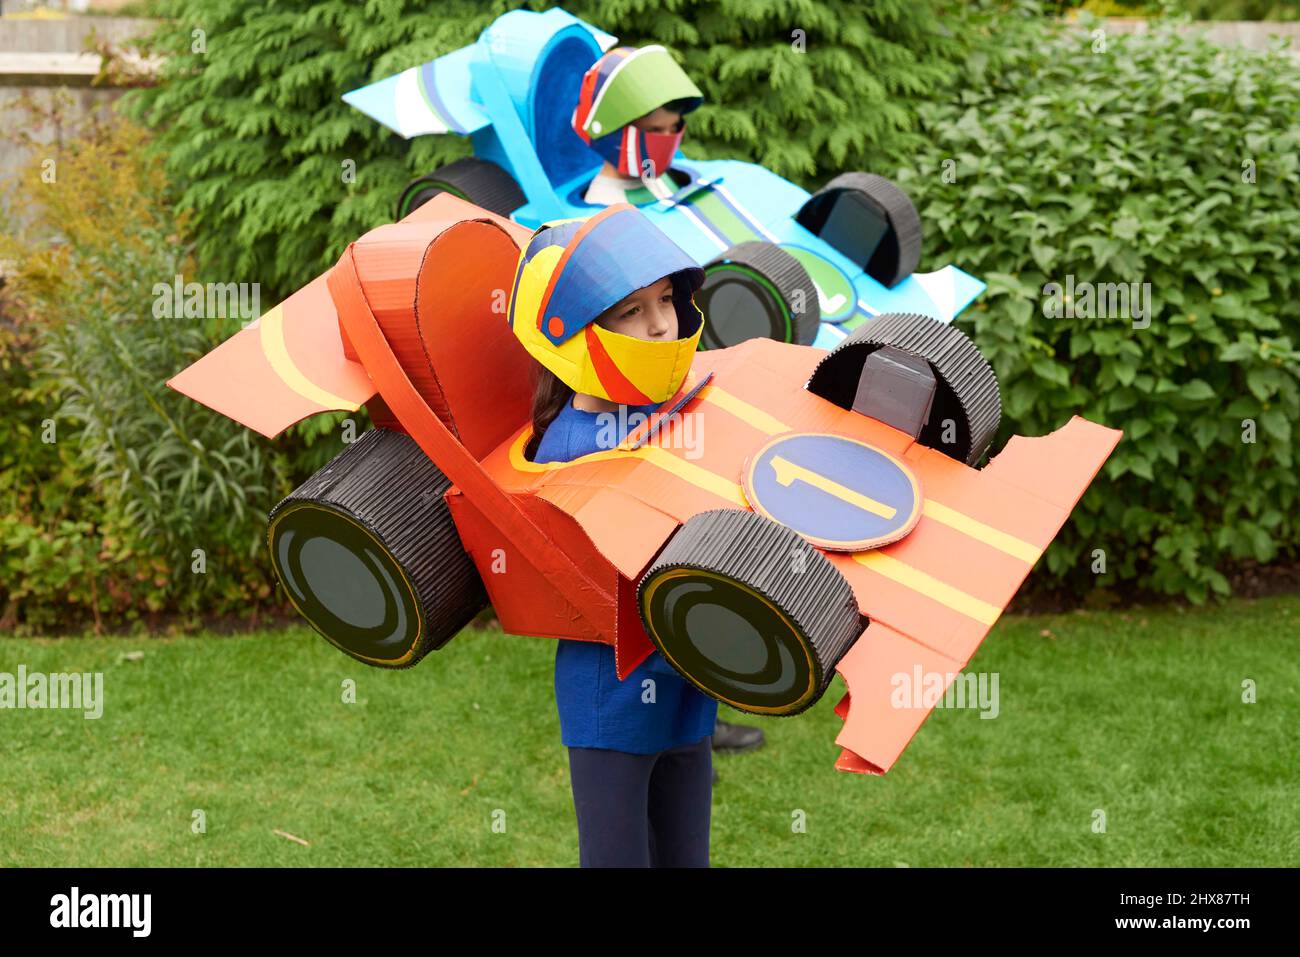 Kinder tragen Rennwagen-Modelle/Kostüm aus Pappe, spielen im Garten Stockfoto